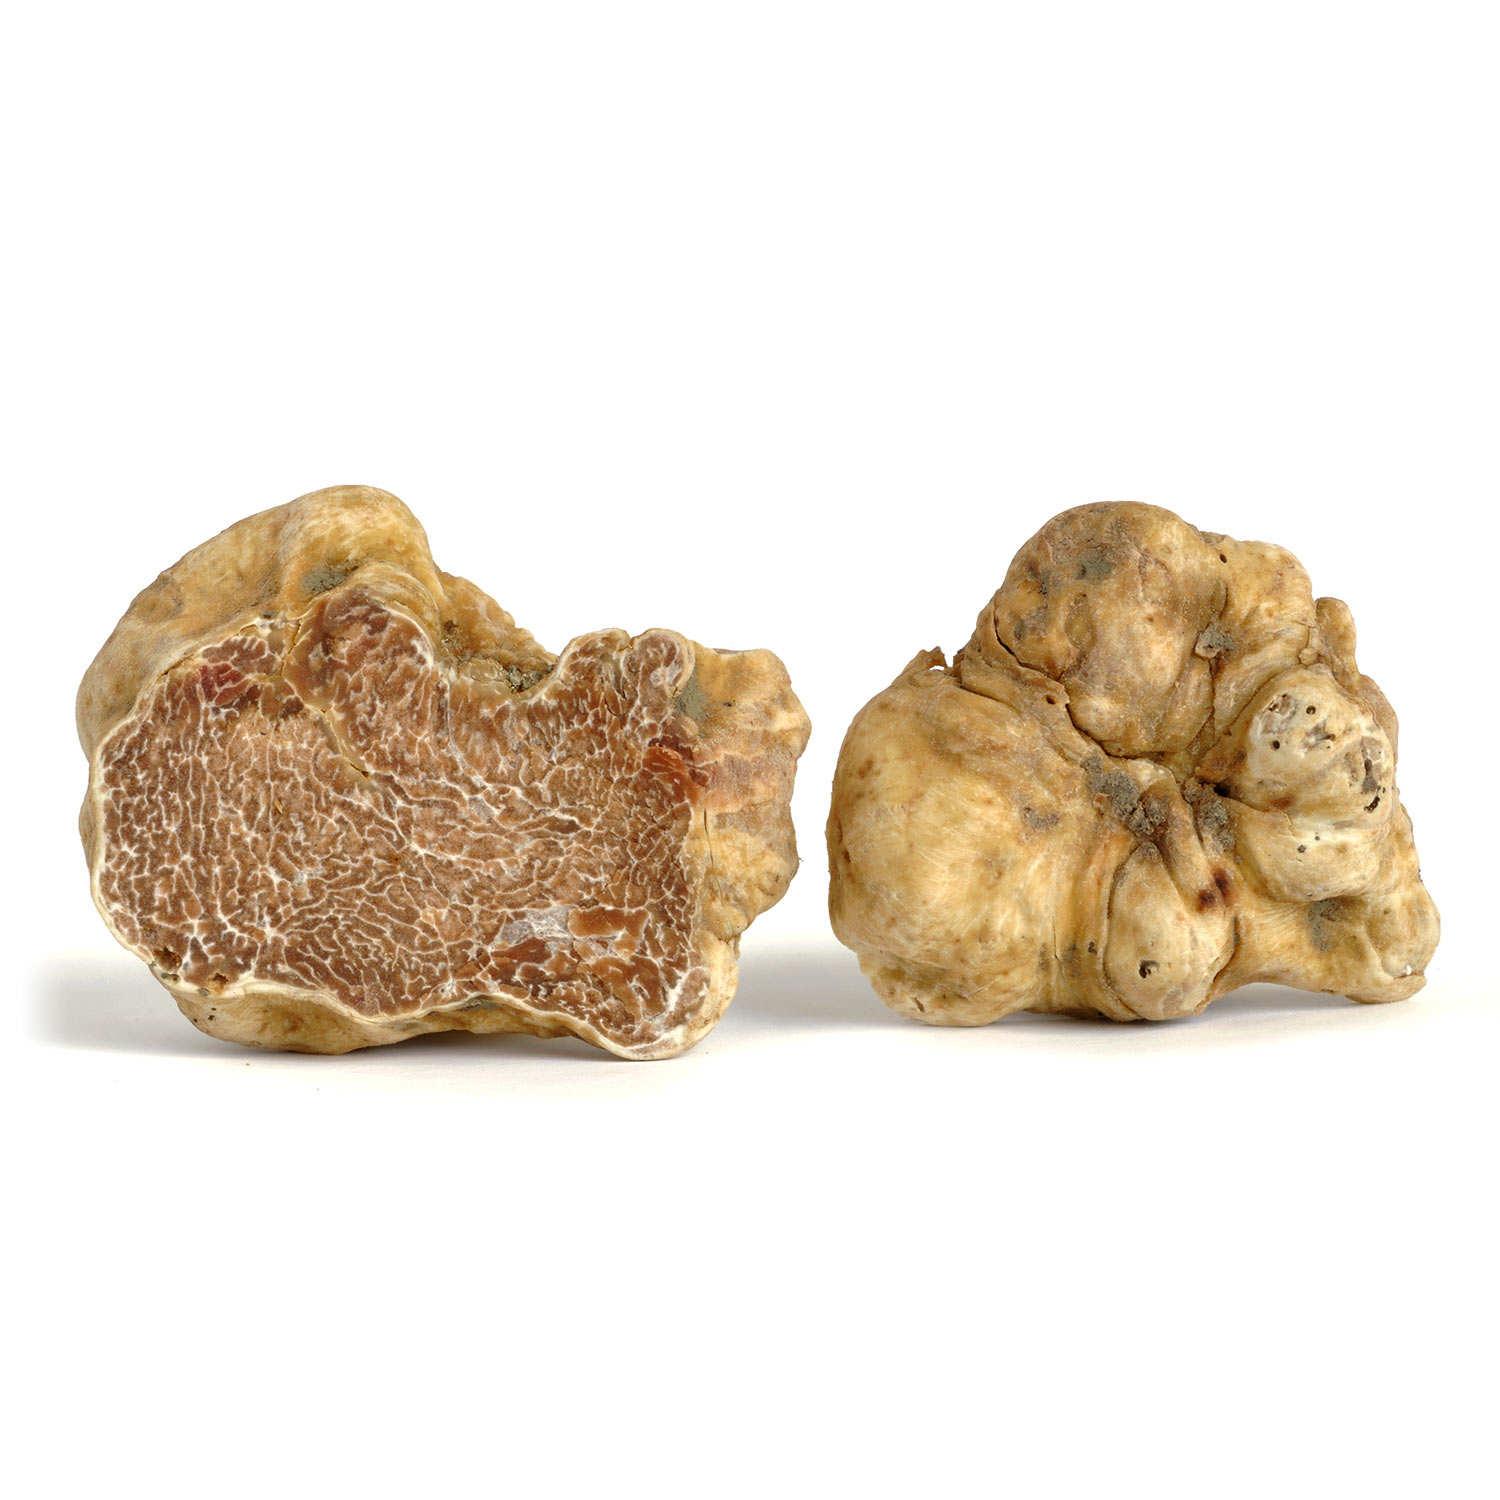 fresh white truffle magnatum pico 15 gr / 0_52 oz